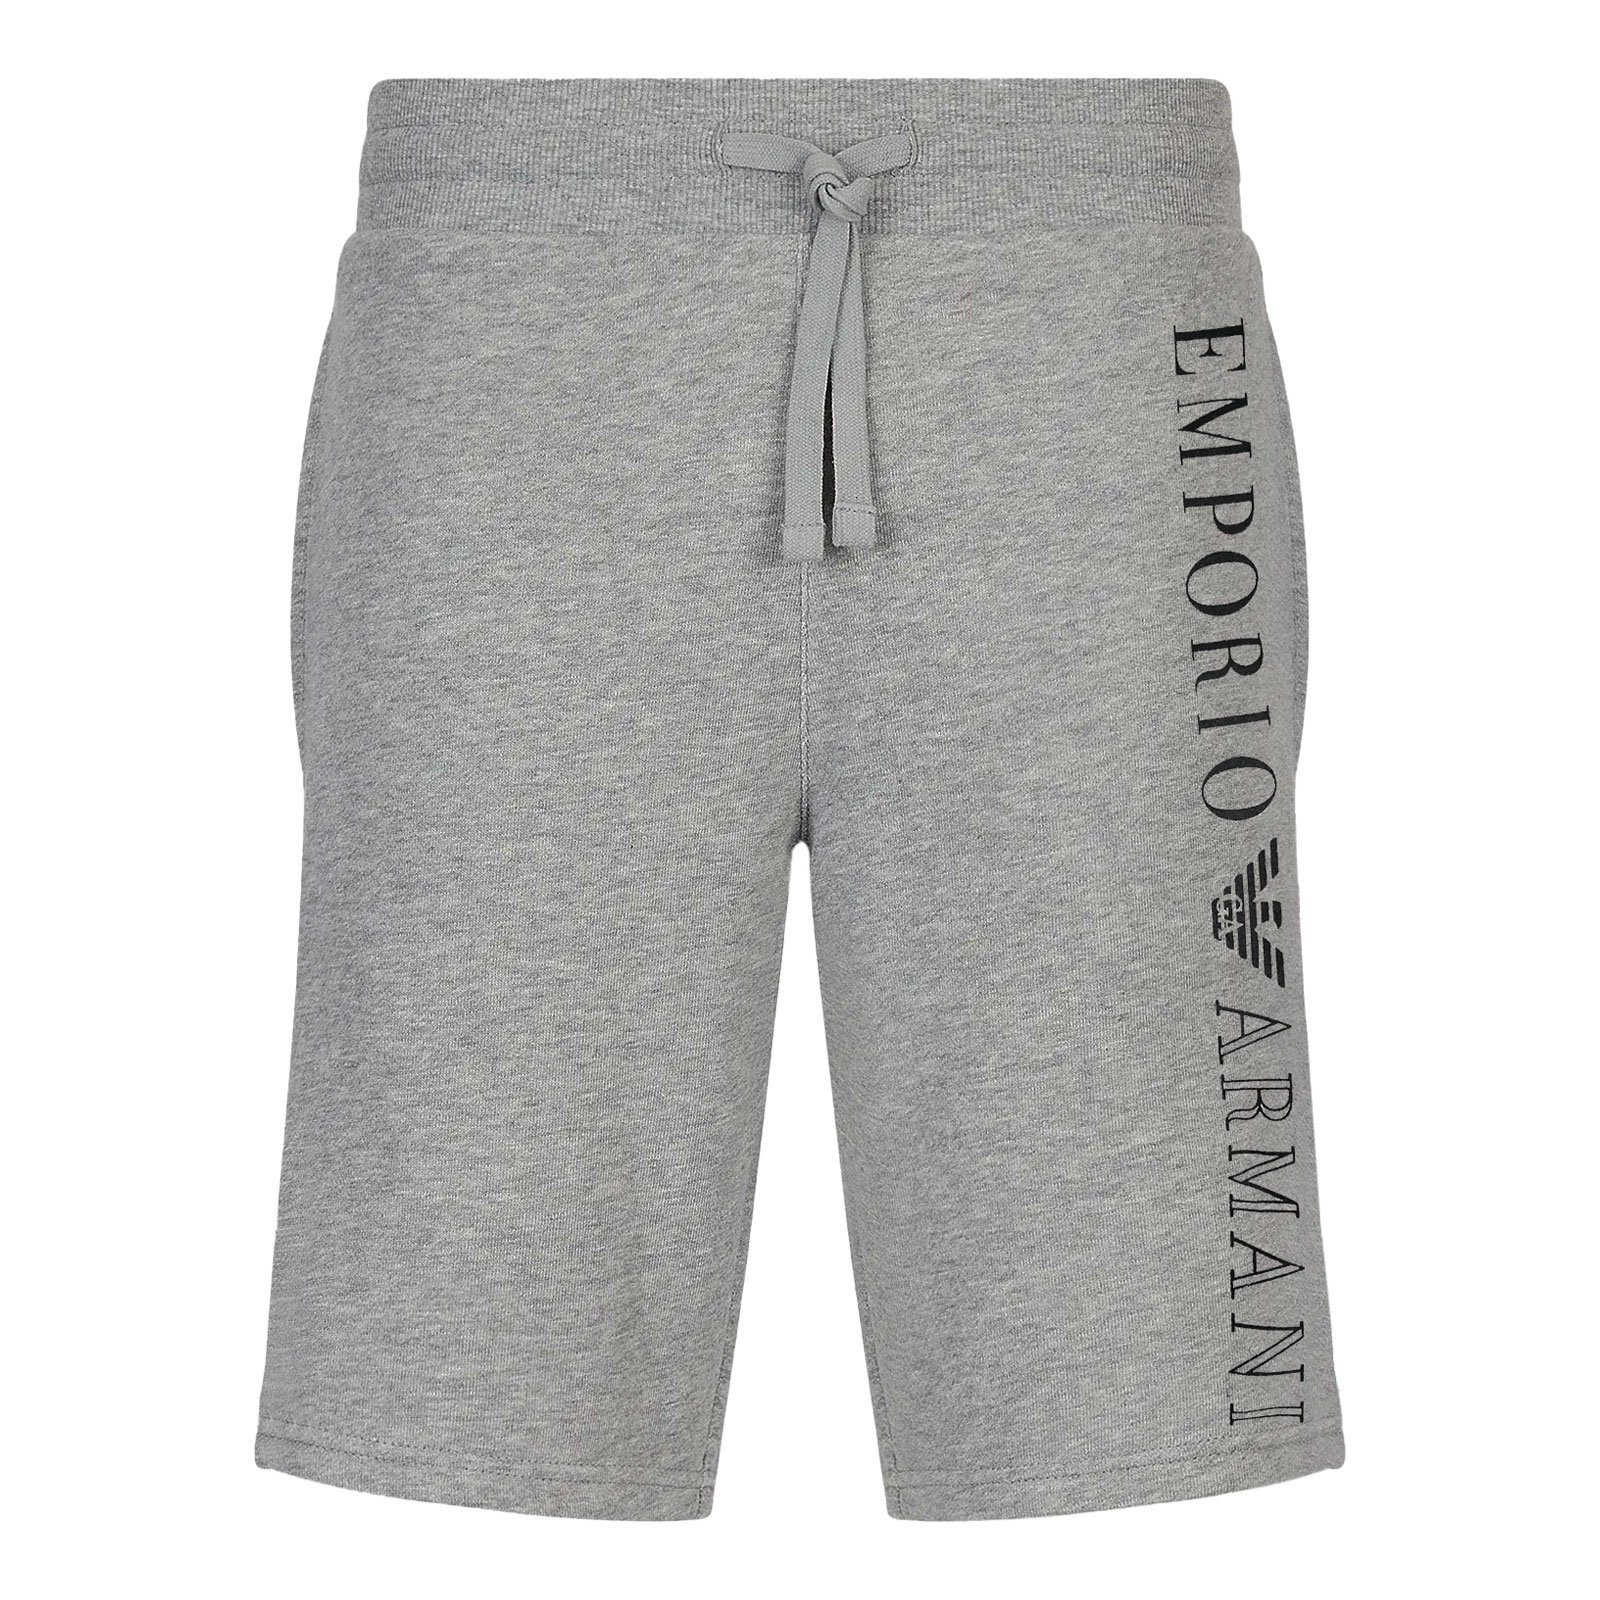 Emporio Armani Bermudas Loungewear mit vertikalem Markenschriftzug 00948 light grey melange